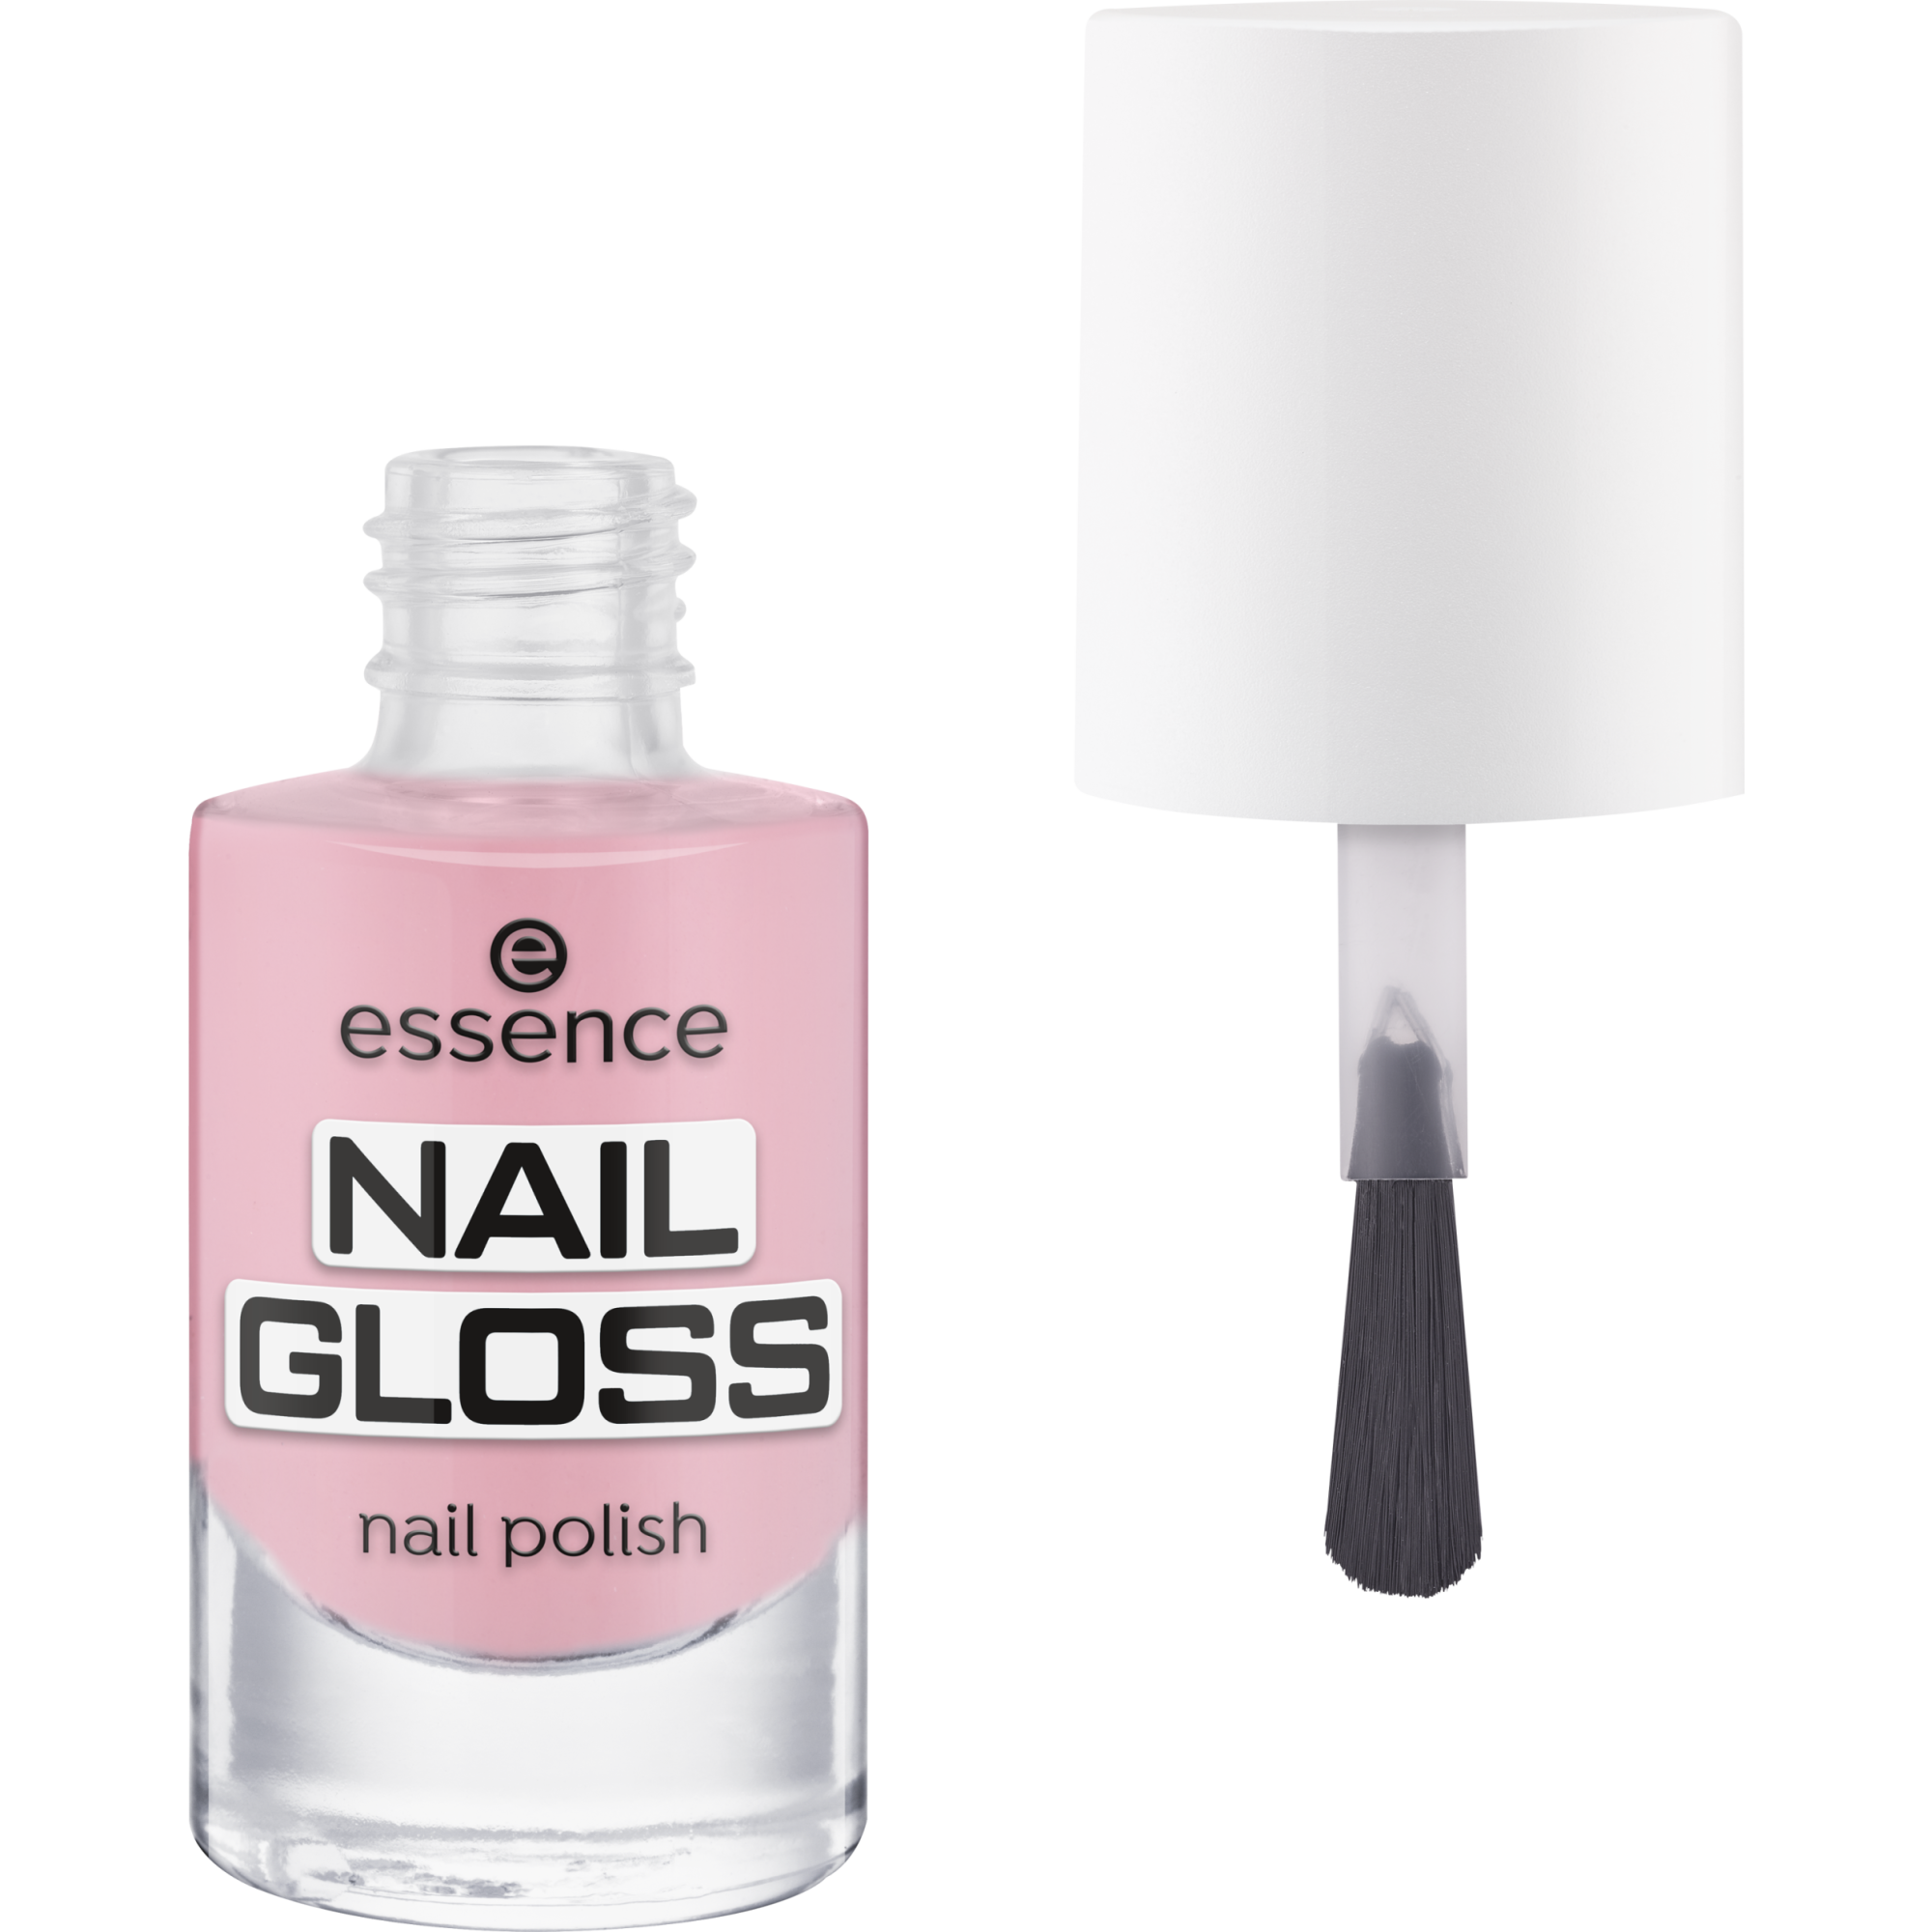 NAIL GLOSS nail polish